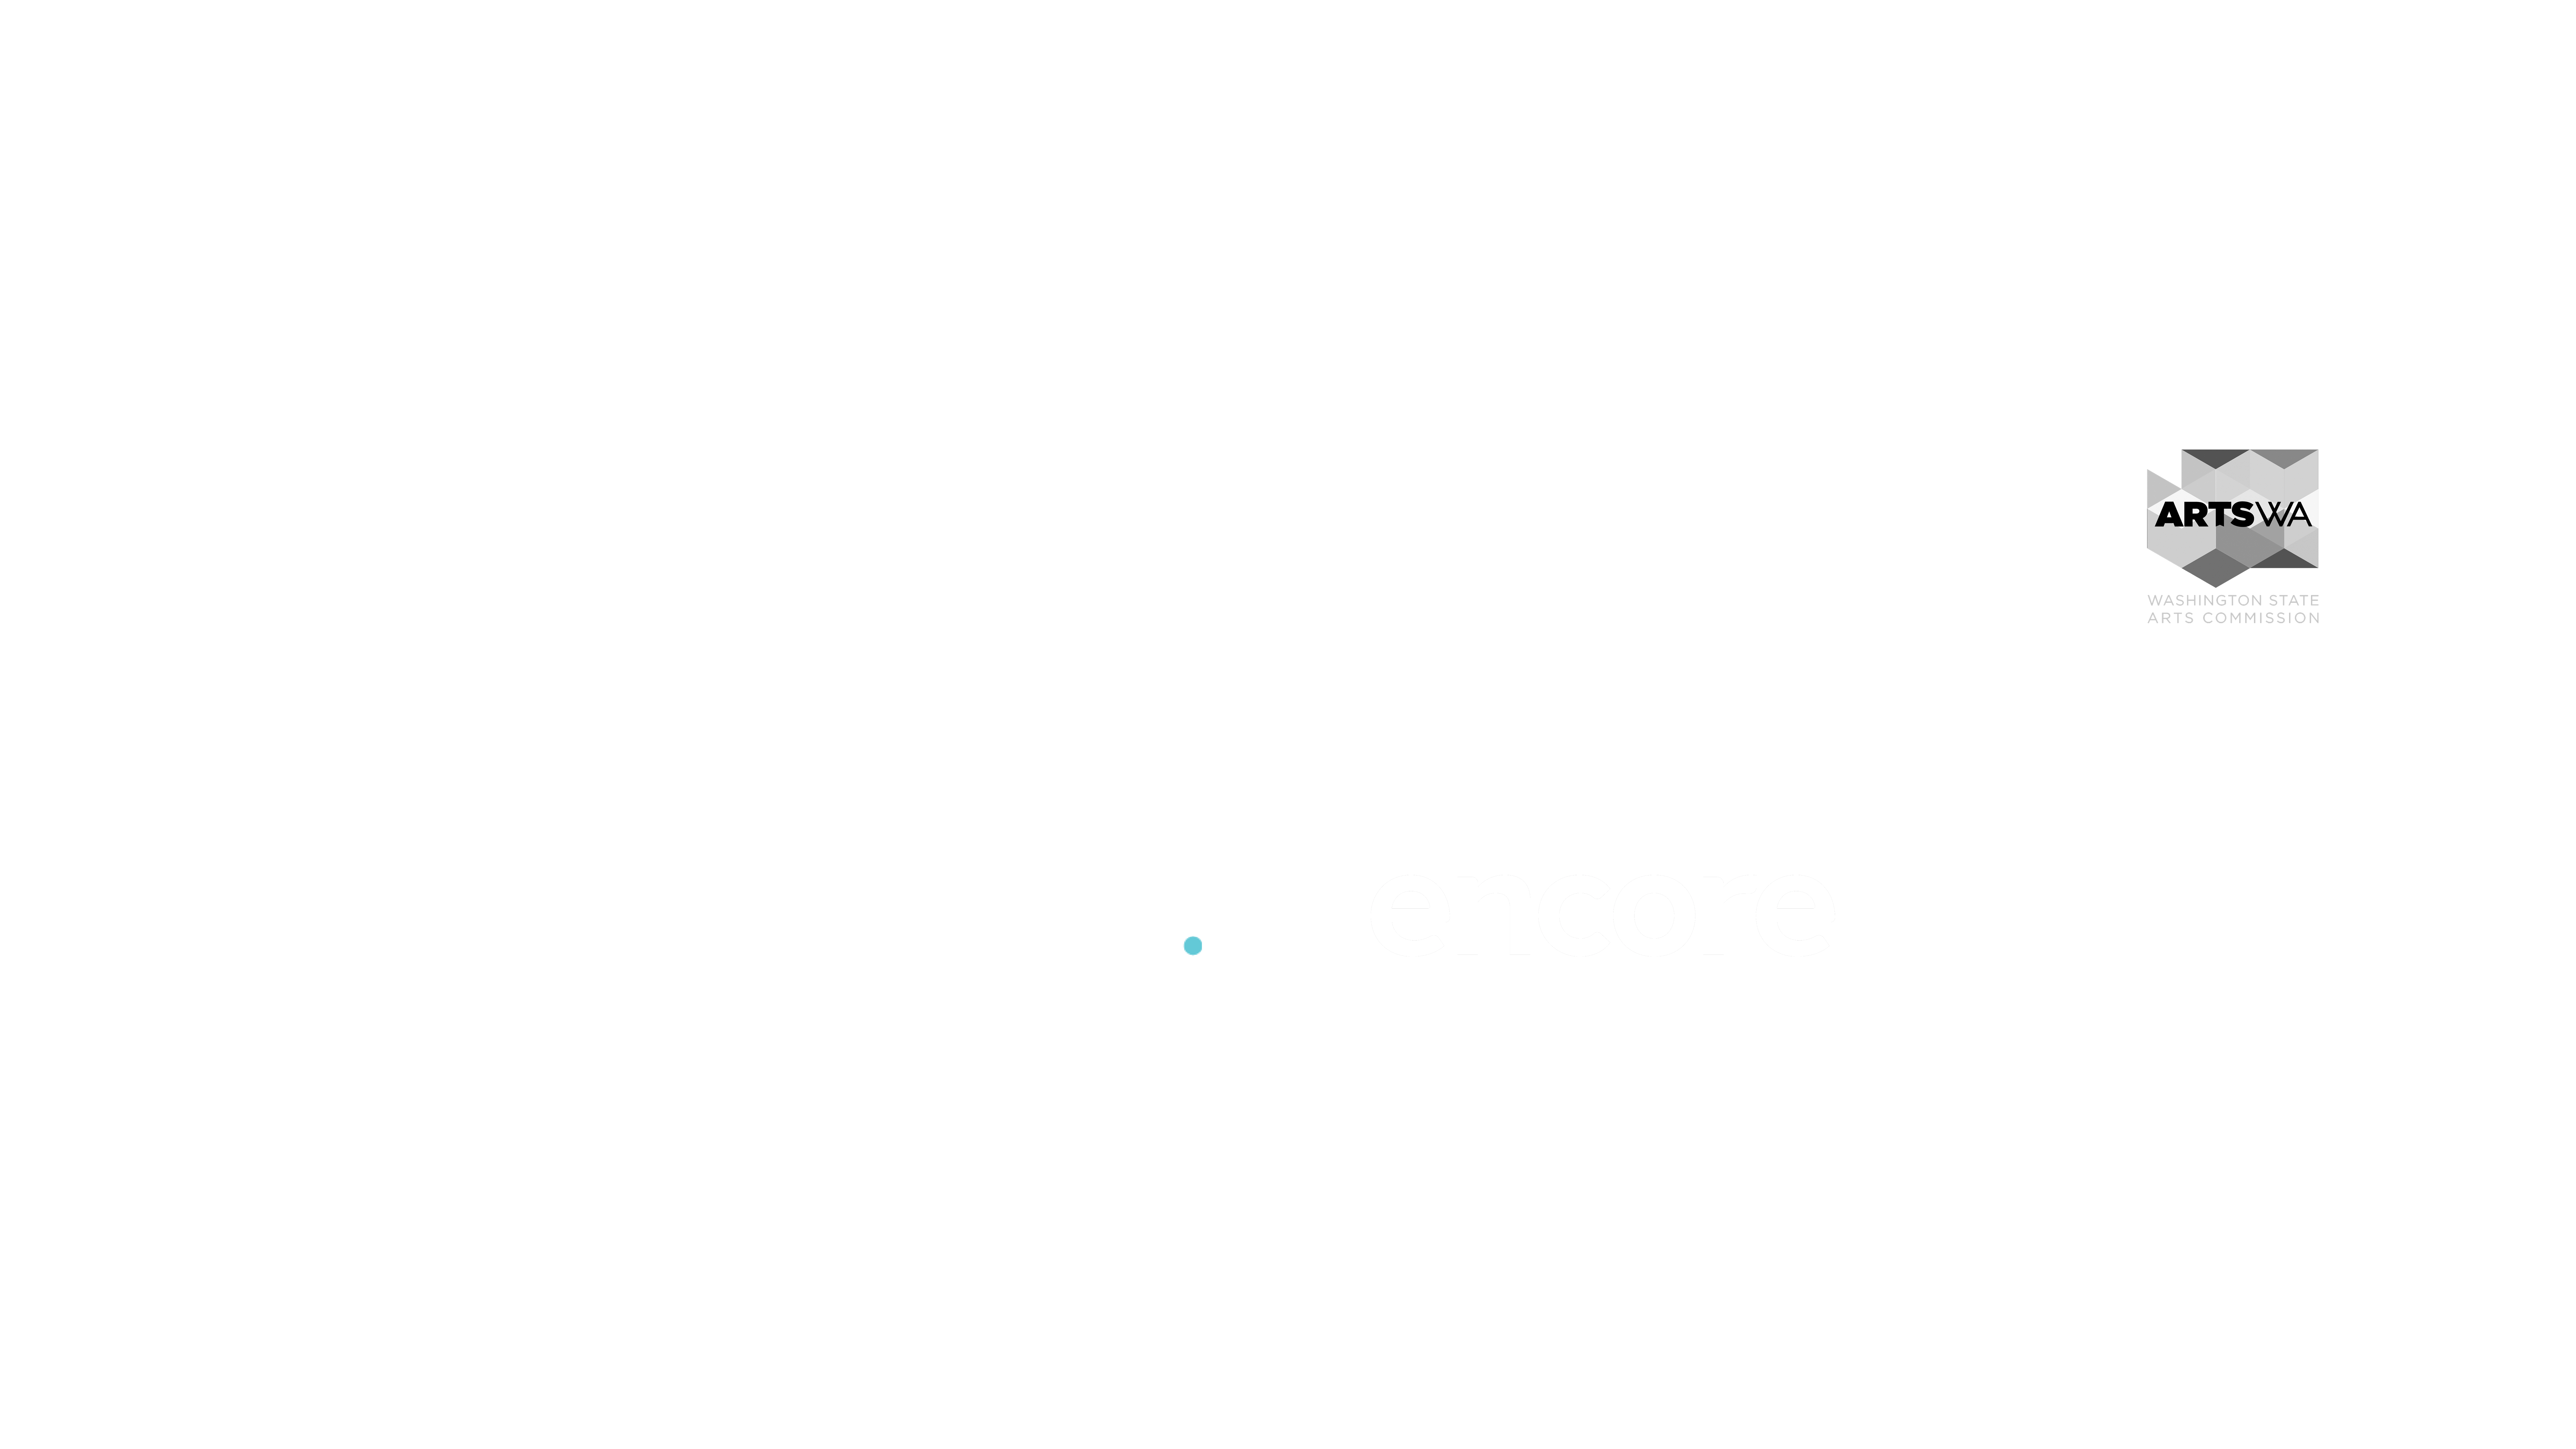 Donor logos